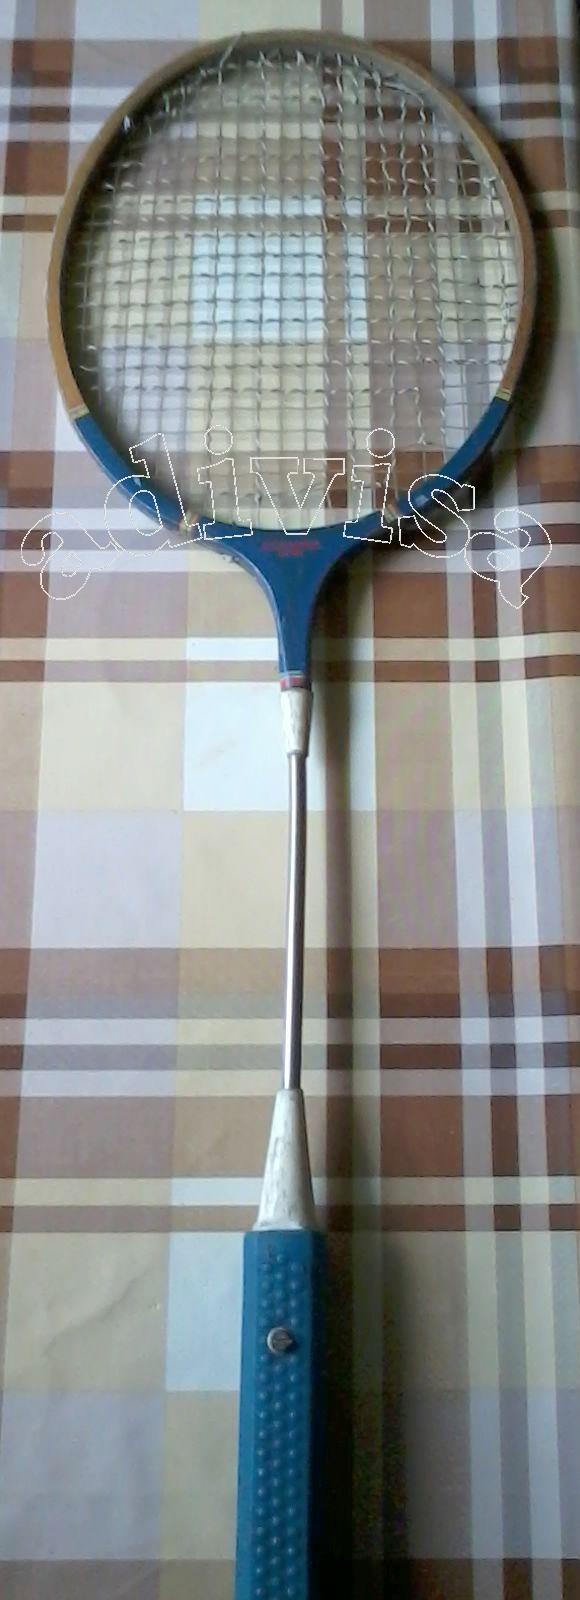 Pierdere în greutate cu badminton, Slăbește și slăbește cu badminton: Cât de des ?